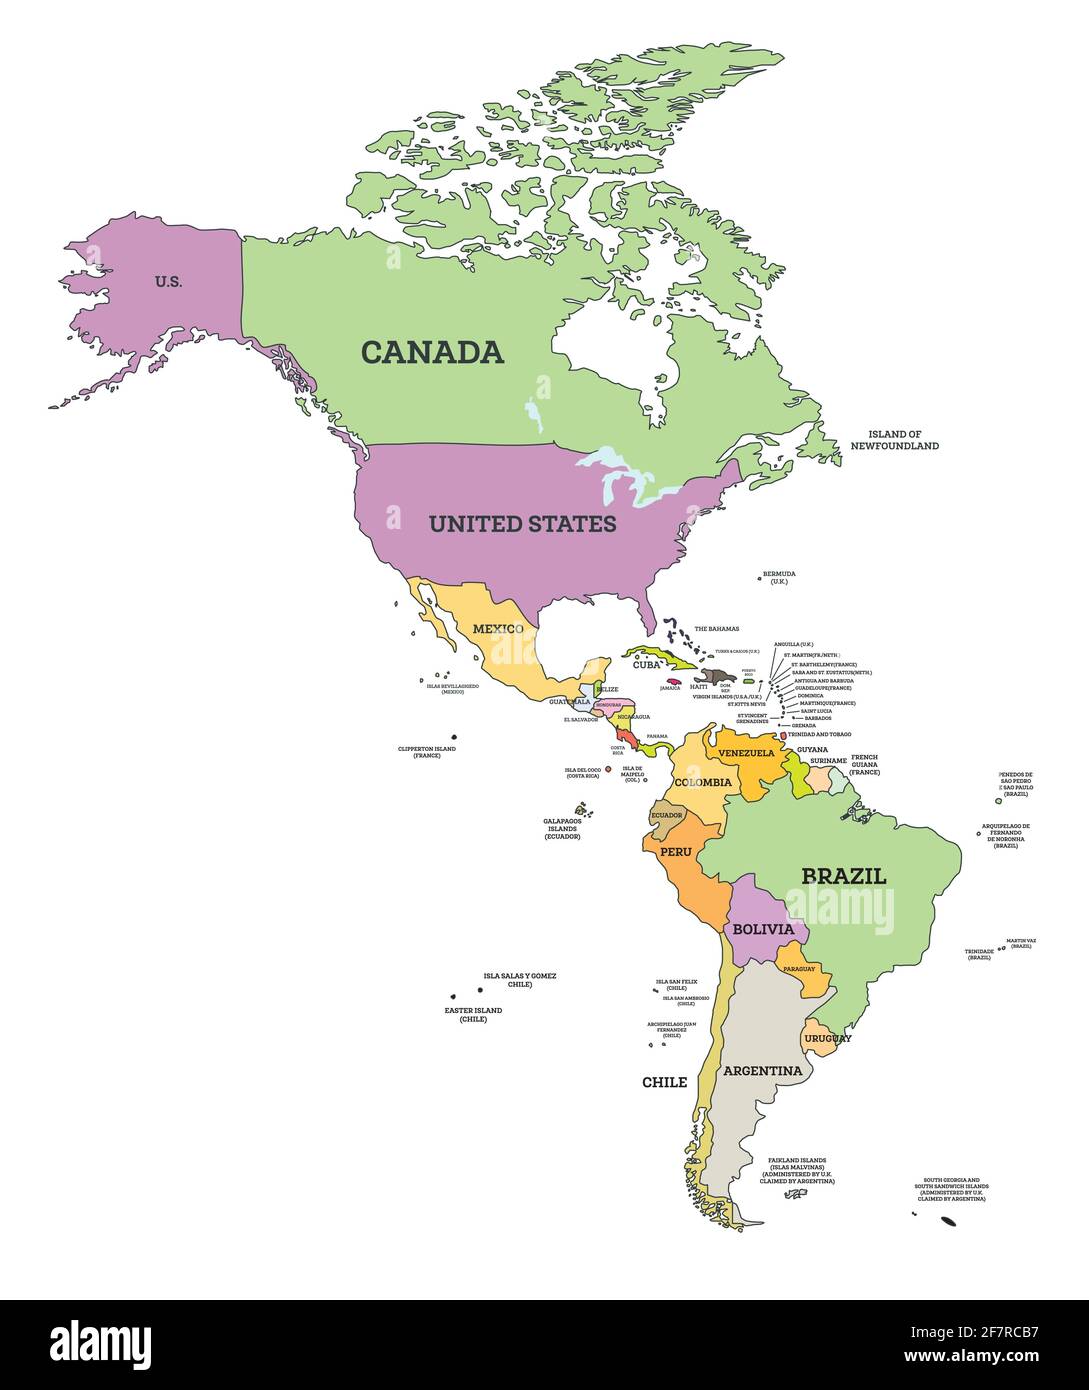 Mappa politica del Sud e del Nord America nella proiezione di Mercatore. Illustrazione vettoriale. Mappa con nome dei paesi isolati in bianco. Illustrazione Vettoriale